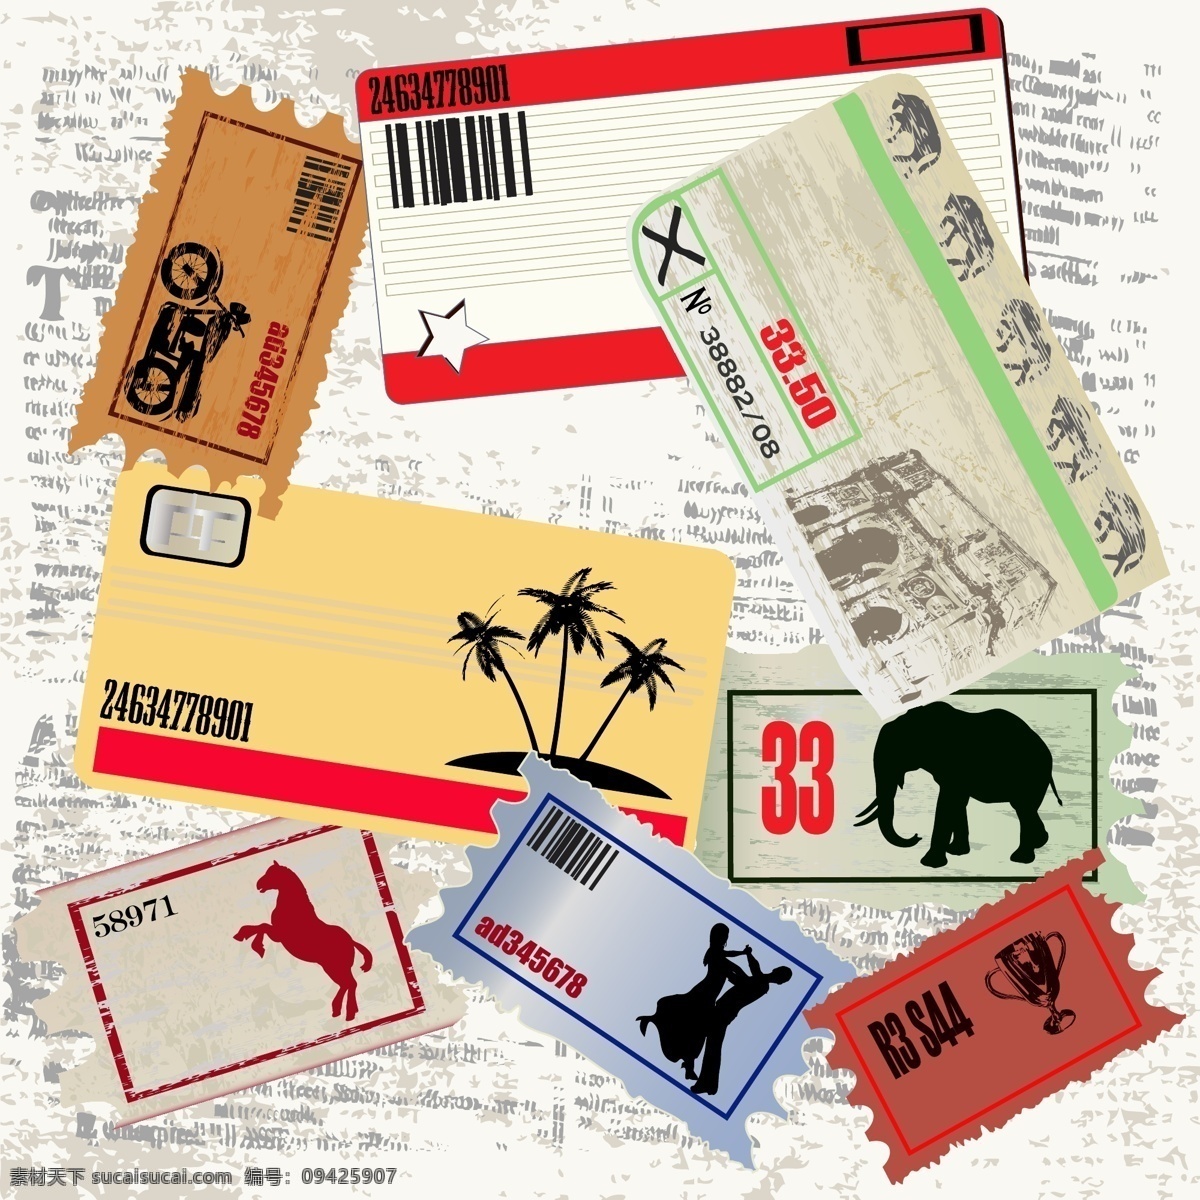 矢量 旅行 票据 存根 素材图片 机票 旅游 铅笔 邮票 登机牌 矢量图 日常生活